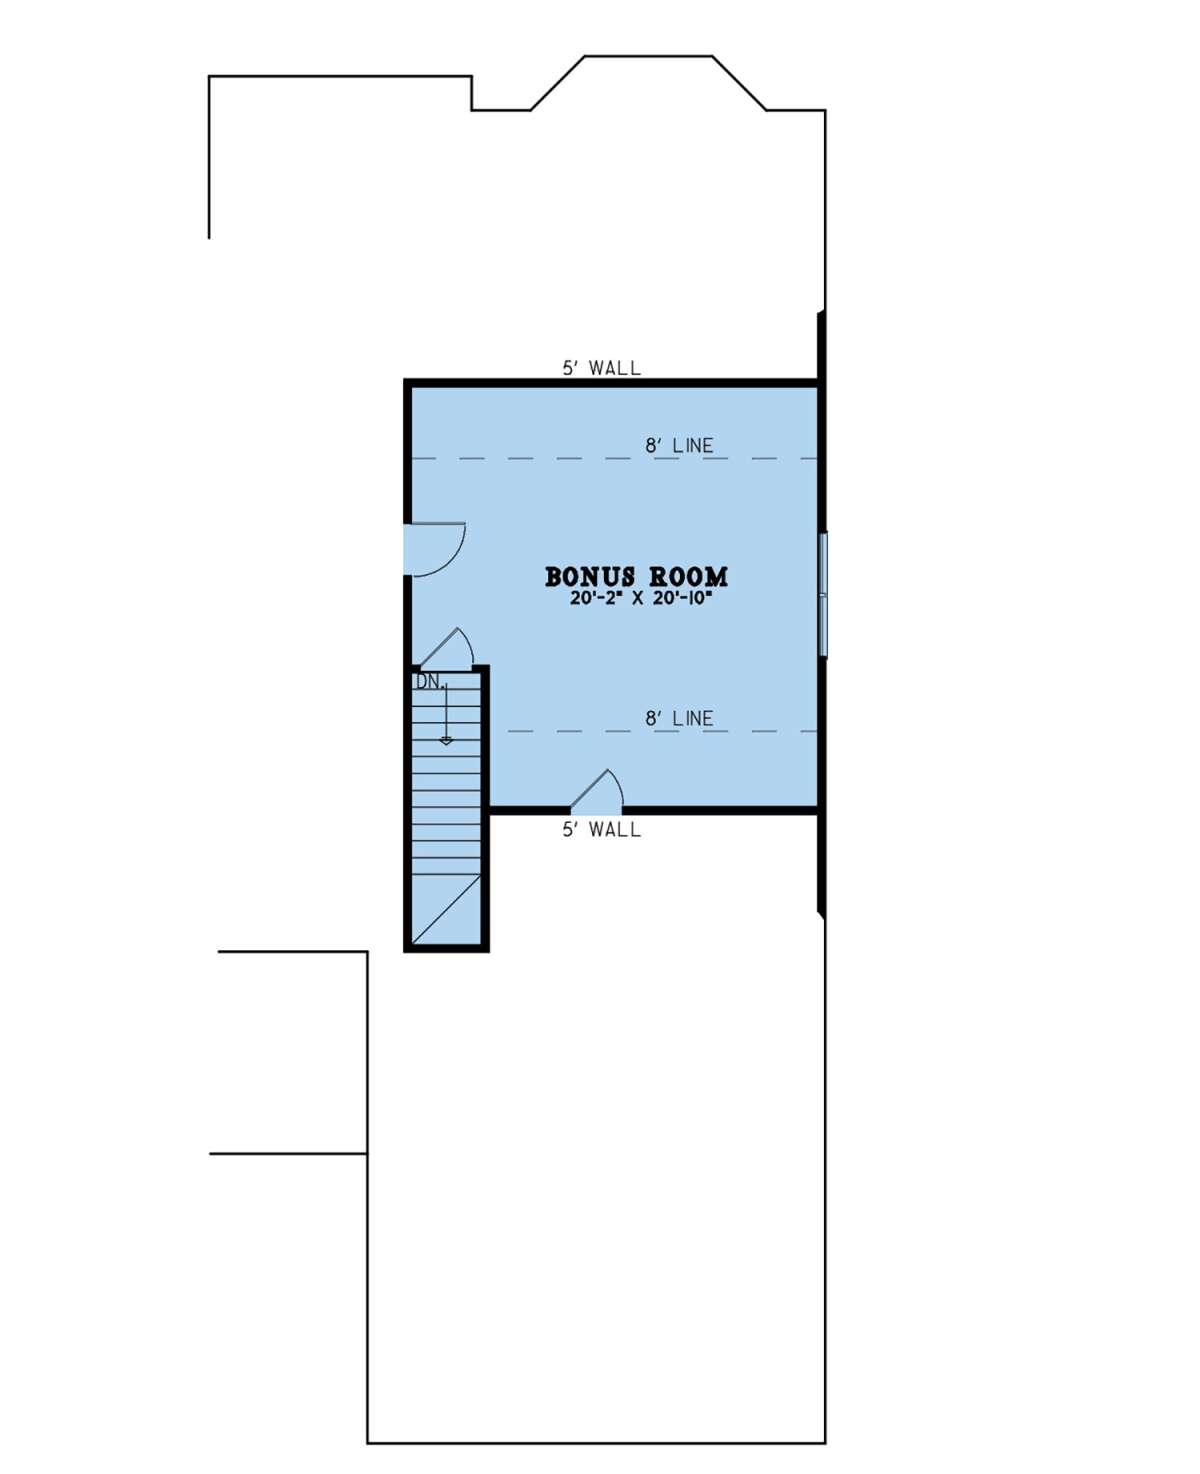 Bonus Room for House Plan #8318-00197